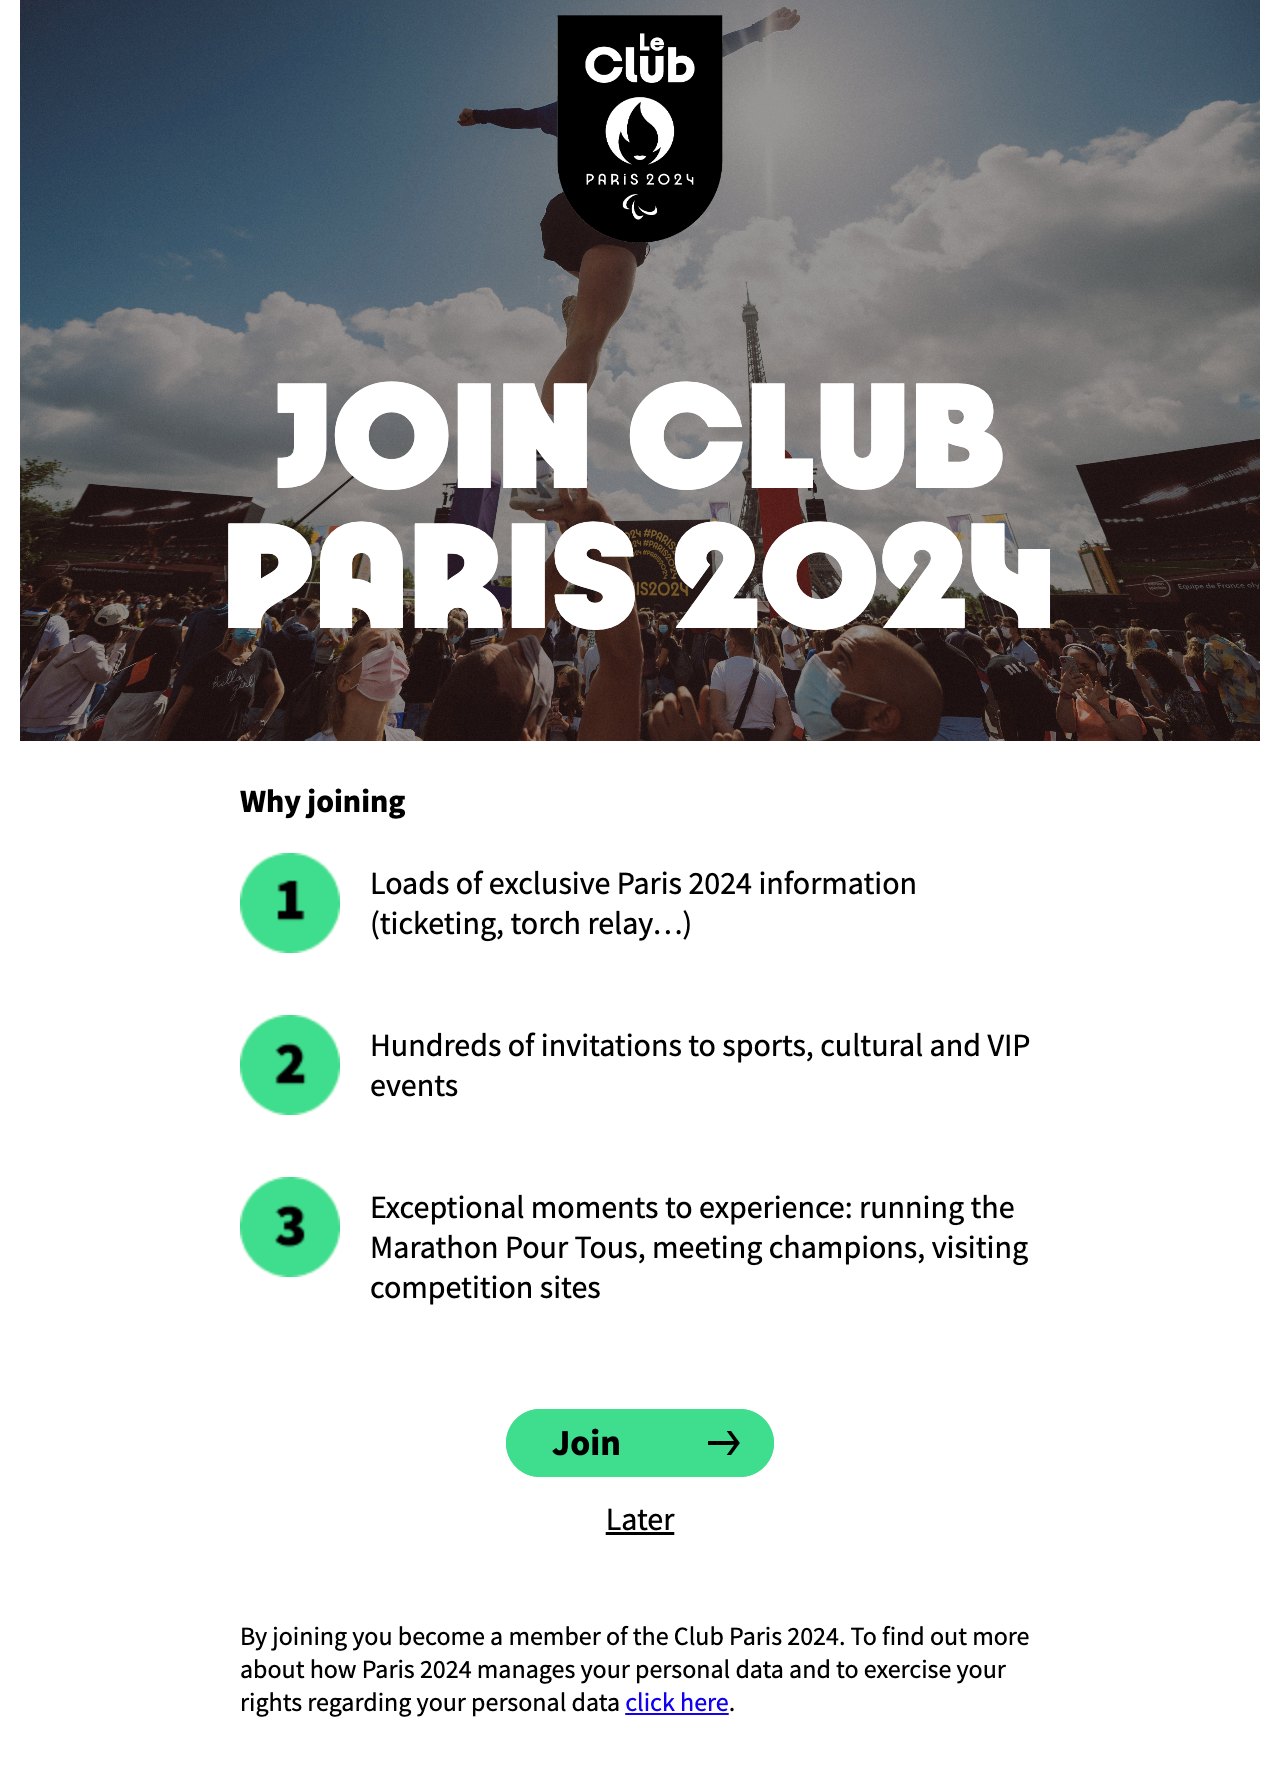 Paris 2024 guidet 2023-01-10 at 4.33.51 PM